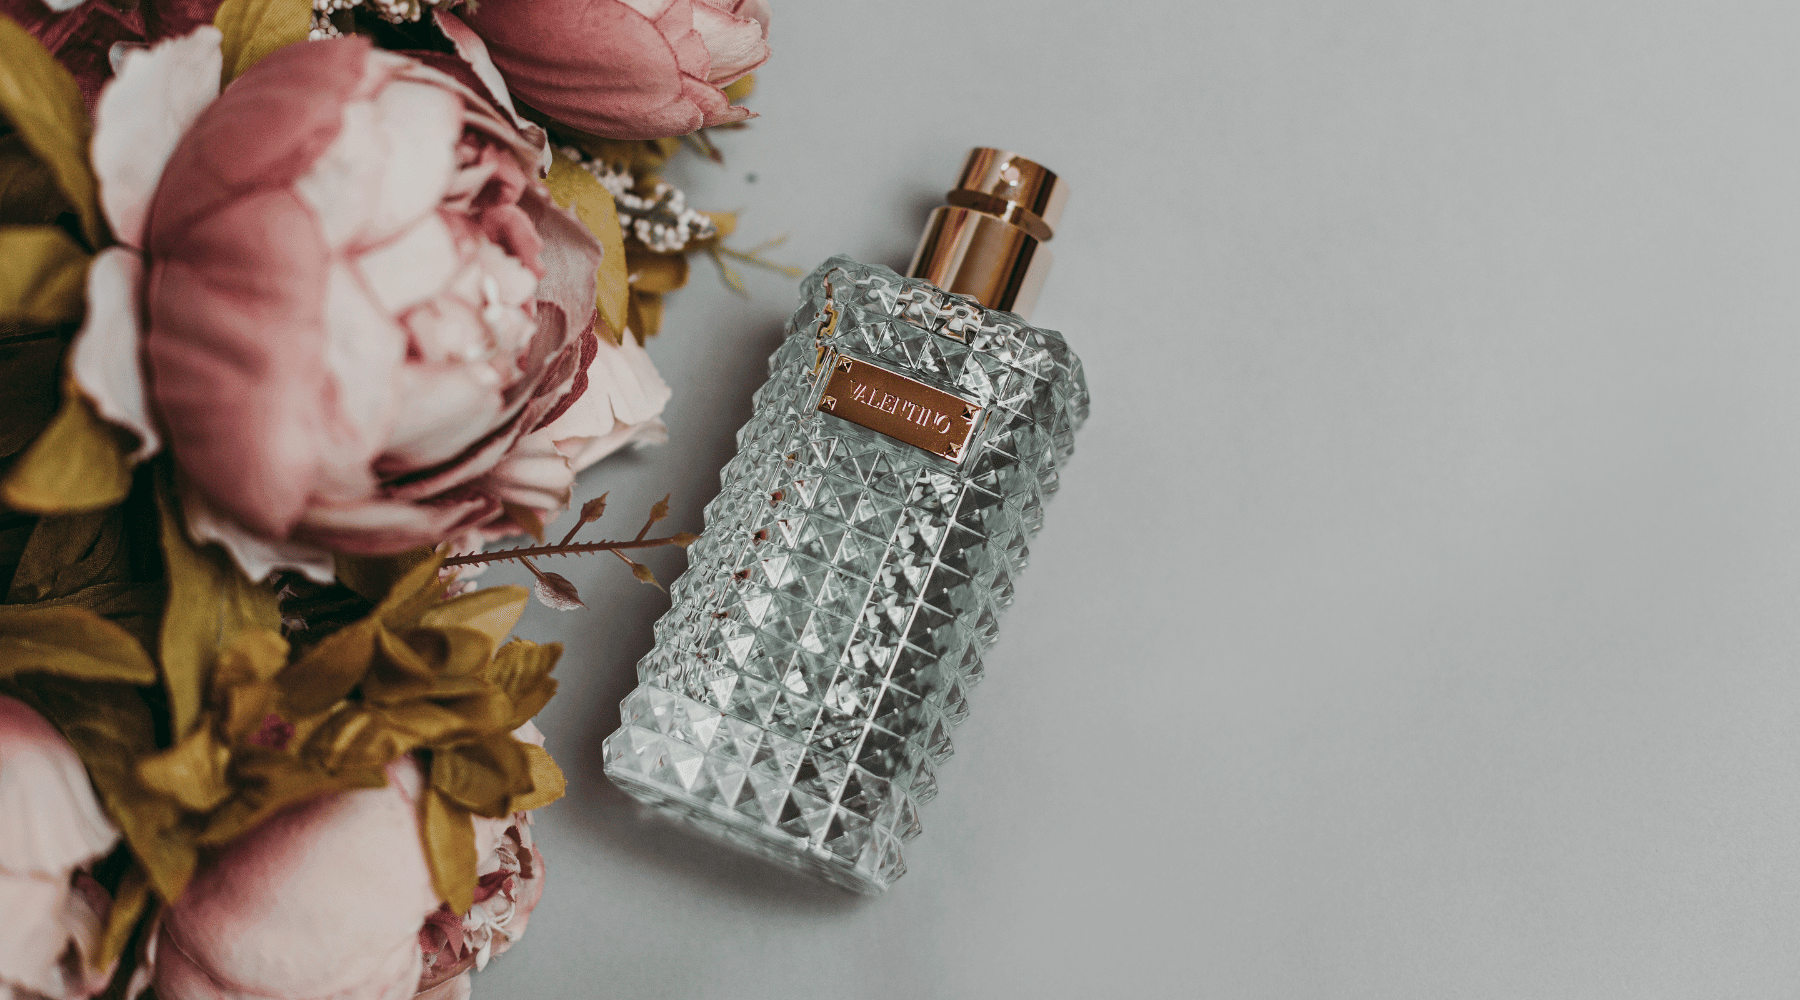 En detaljerad VALENTINO parfymflaska bredvid en bukett av blekrosa pioner, vilket skapar en känsla av lyx och romantik.